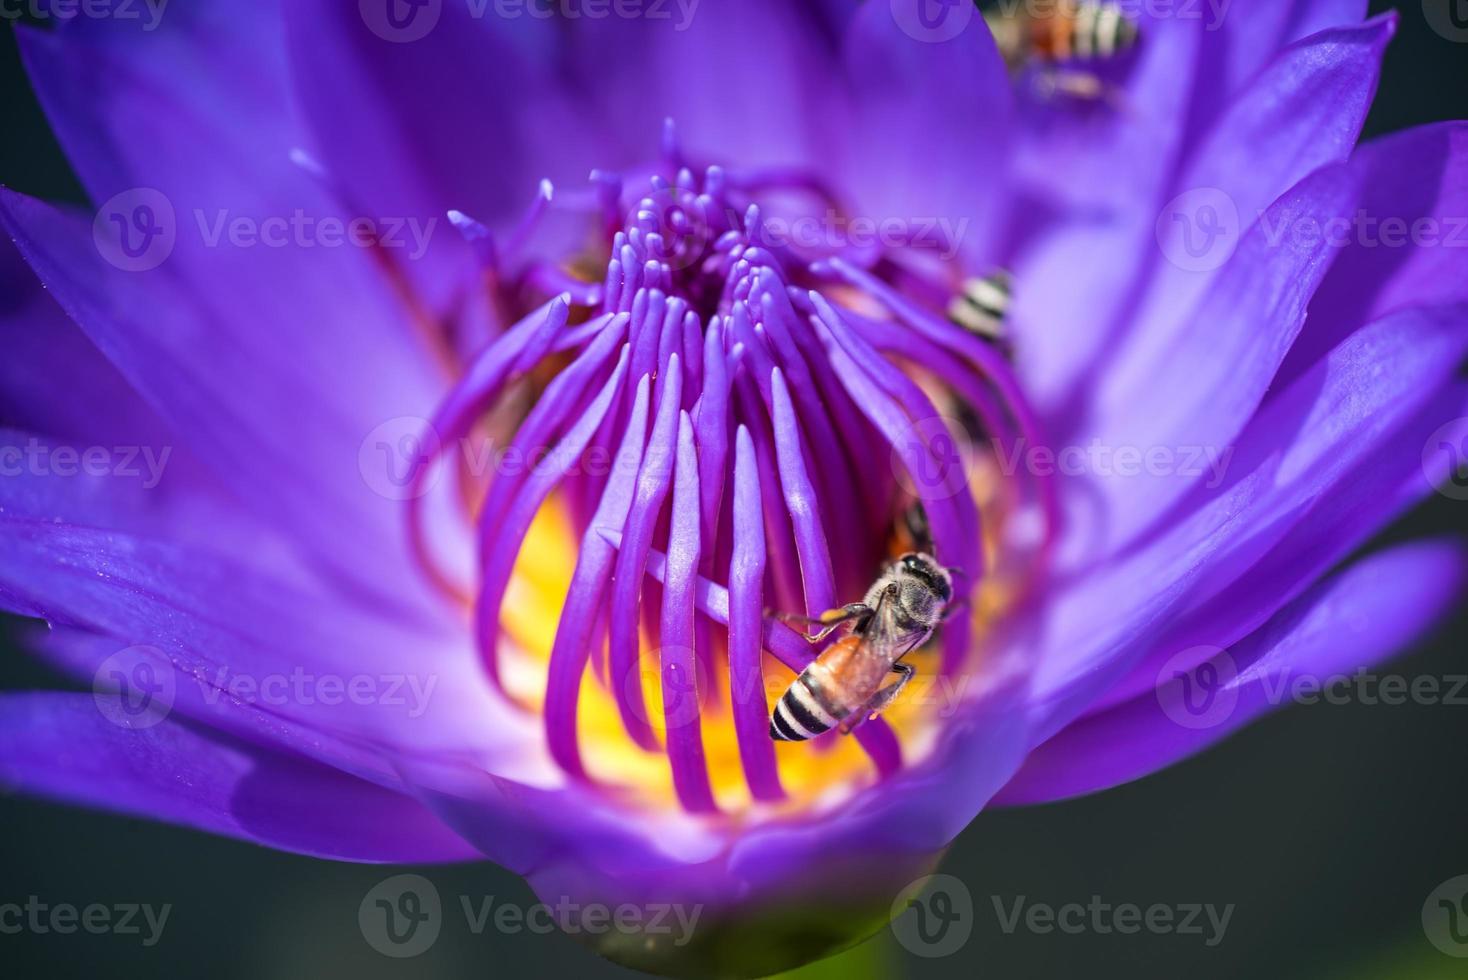 as abelhas obtêm o néctar da bela flor roxa de nenúfar ou flor de lótus. foto macro de abelha e a flor.